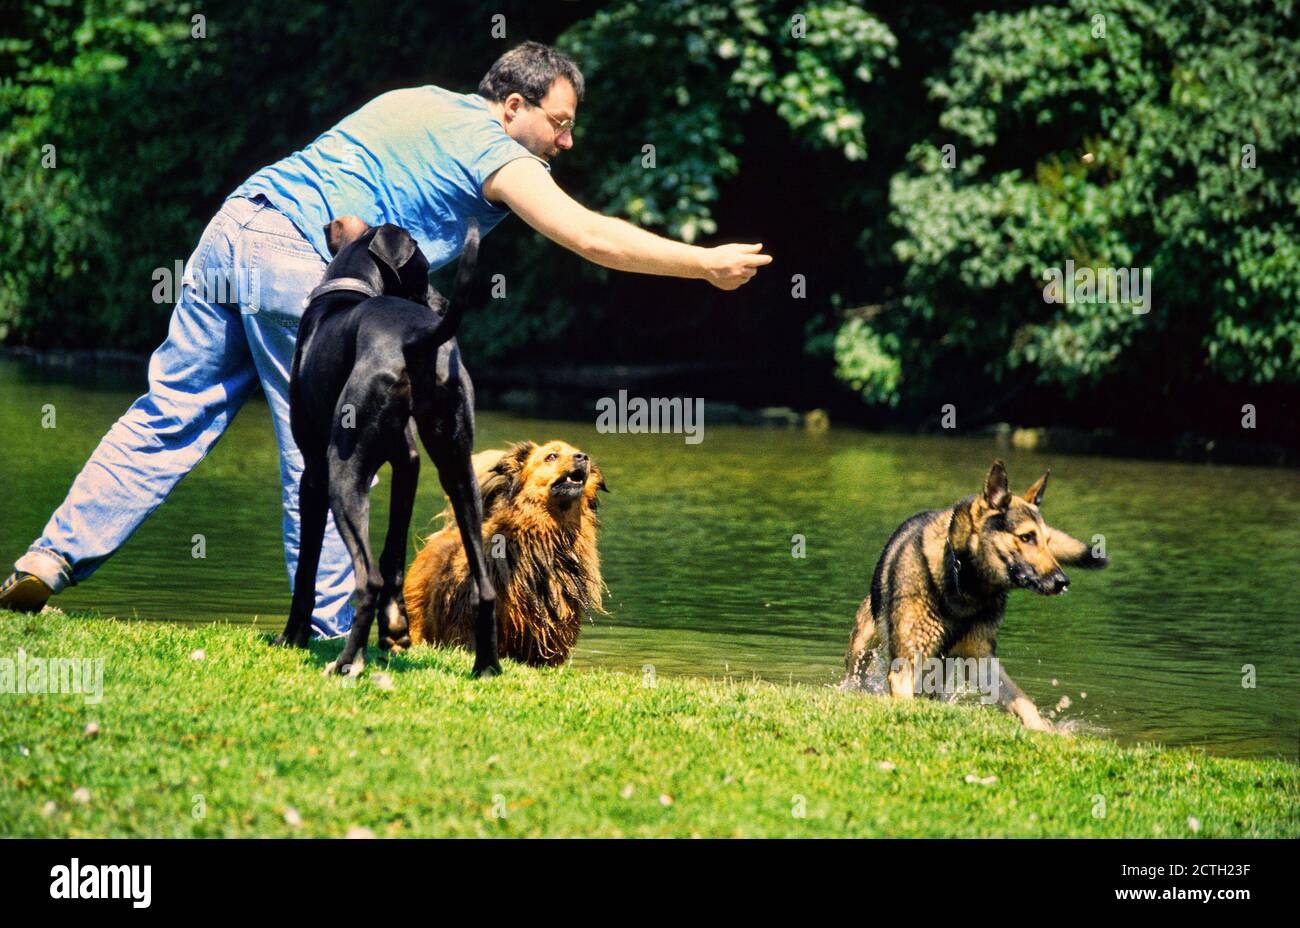 Homme de lancer objet pour les chiens joueurs dans le jardin anglais, Munich, Allemagne Banque D'Images